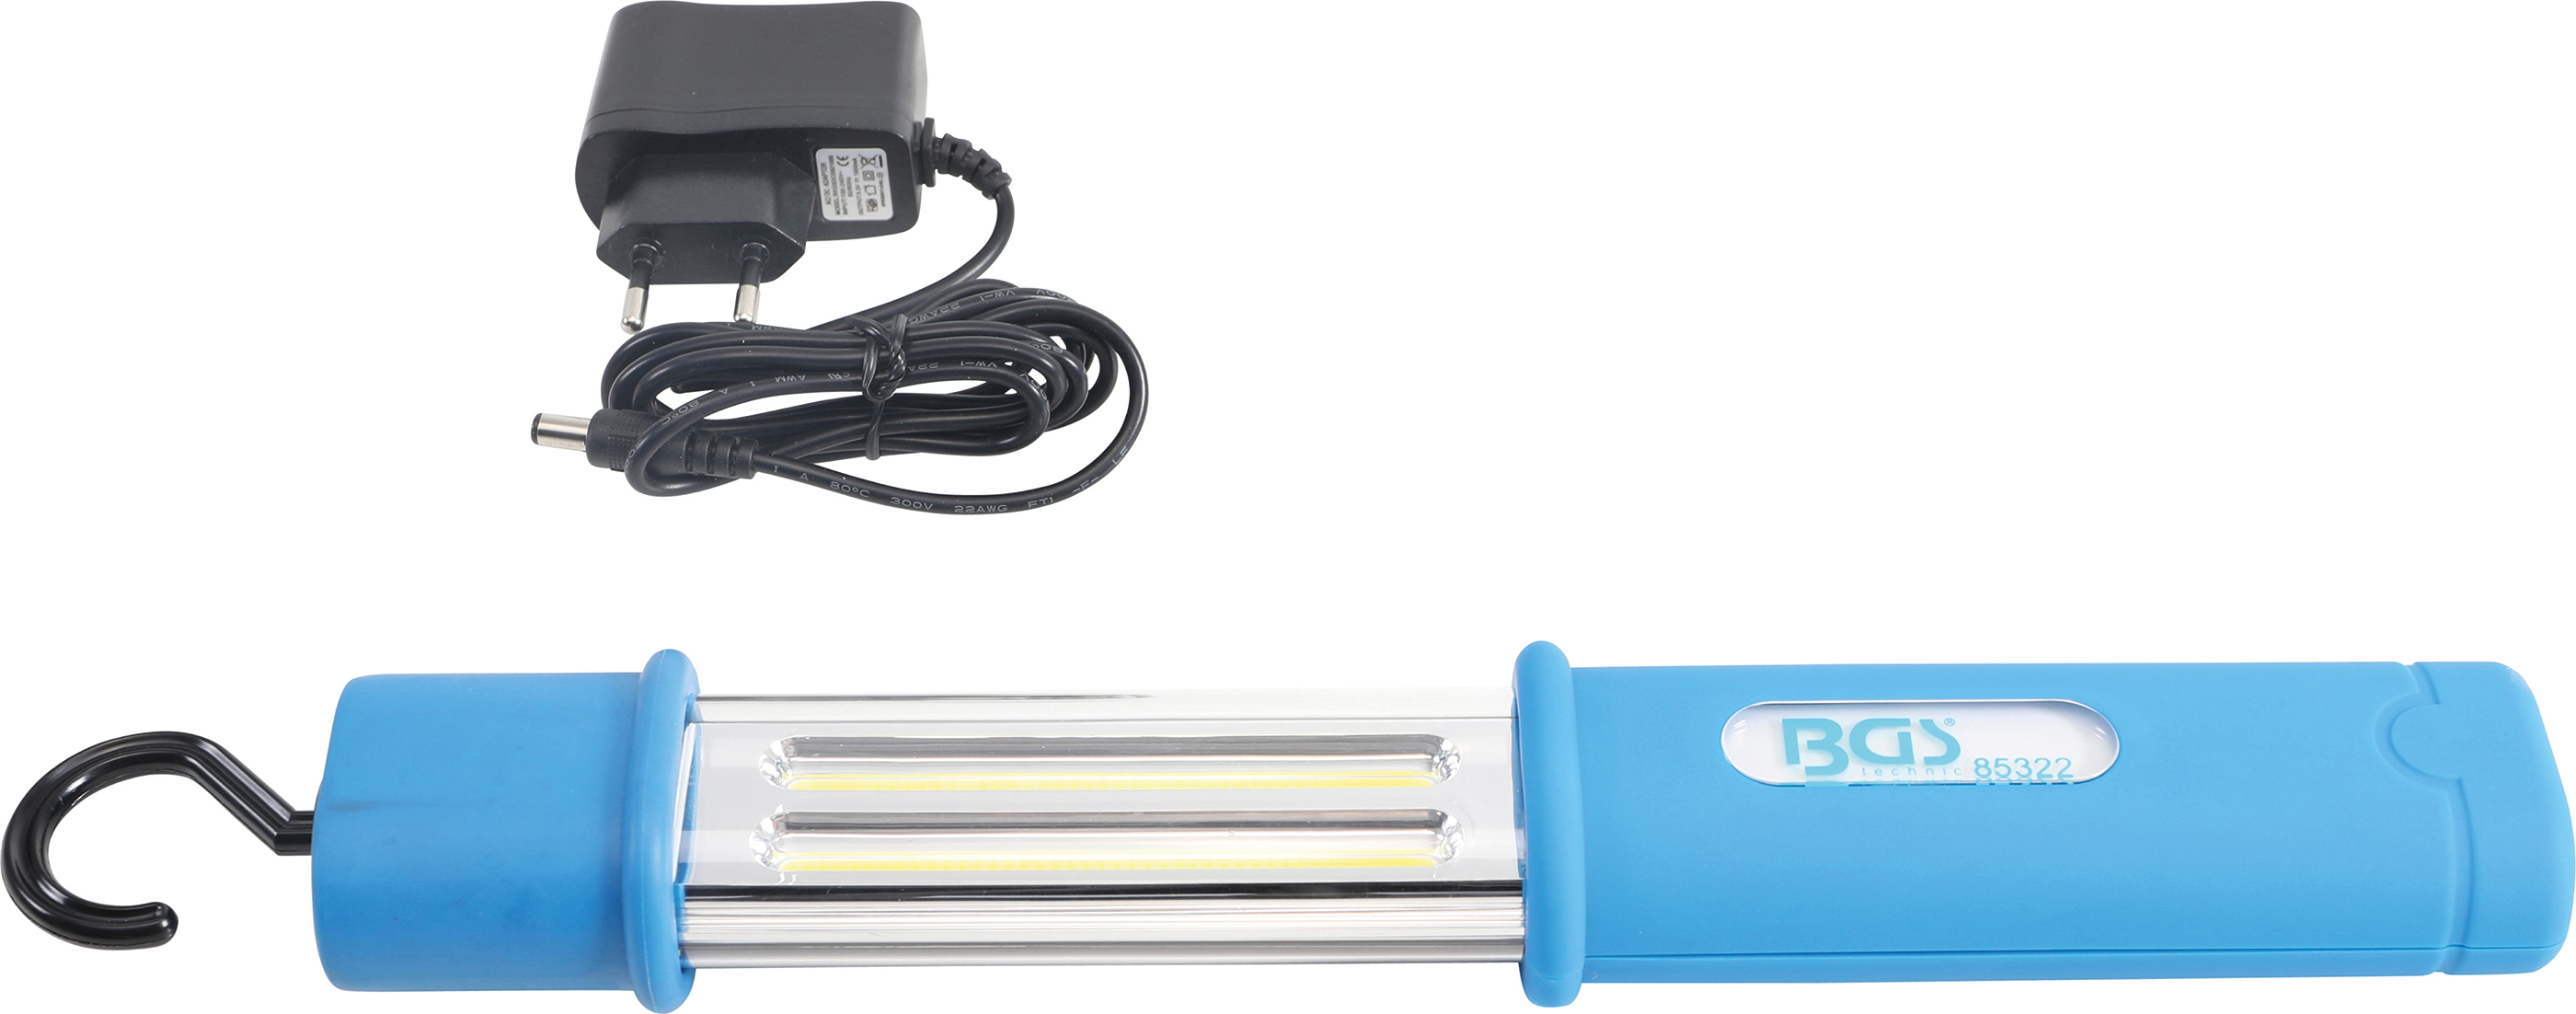 BGS 85322  Lanterna COB LED 5W waterproof,  dimensiuni 315 x 56 x 41,5 mm, greutate 300 gr